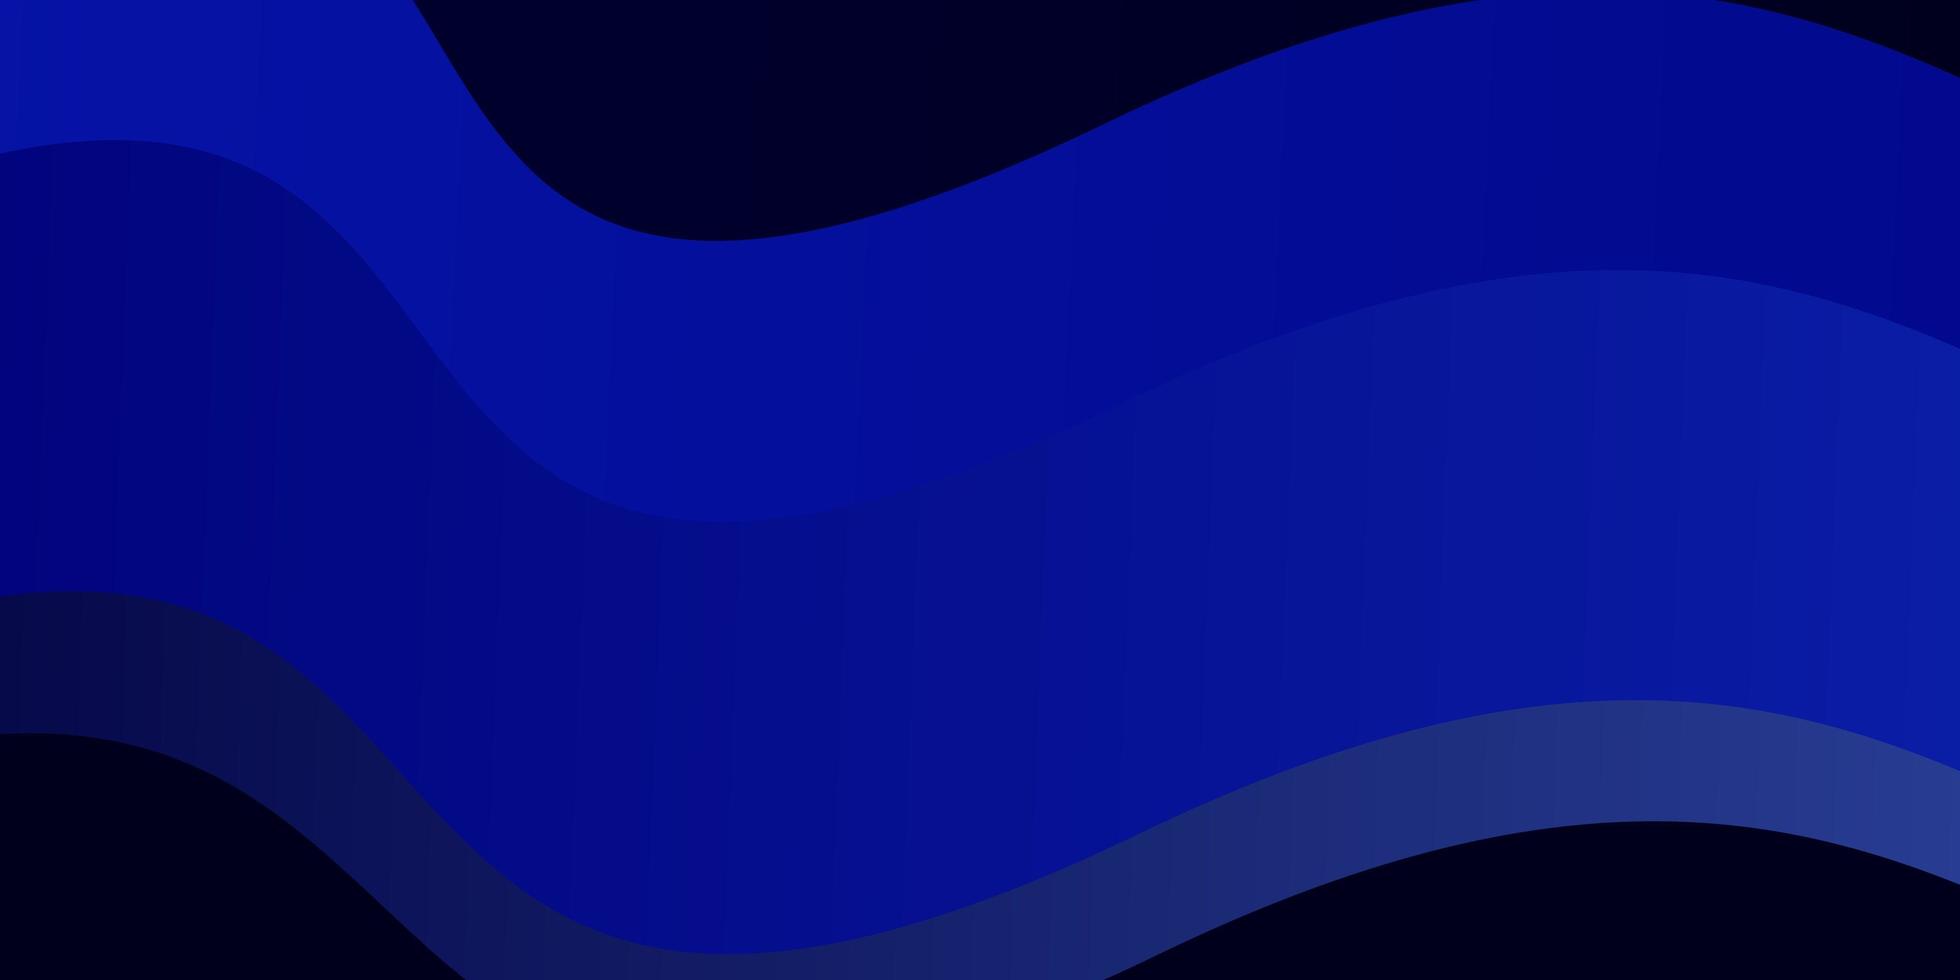 toile de fond de vecteur bleu foncé avec des lignes pliées illustration abstraite avec motif de lignes de dégradé bandy pour les publicités publicitaires